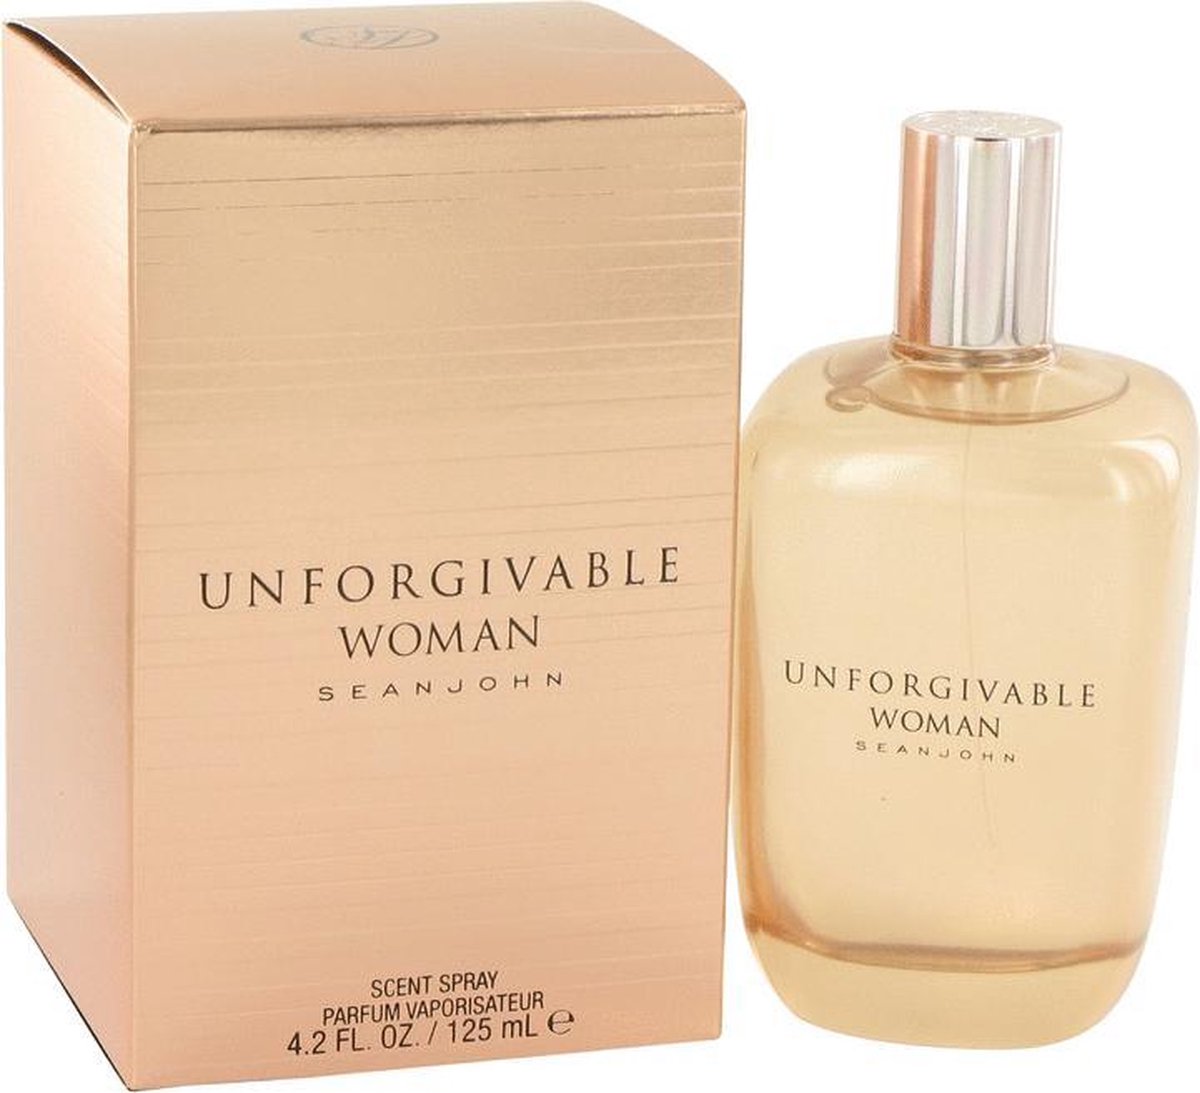 Sean John Unforgivable Woman - 125 ml - Eau de parfum